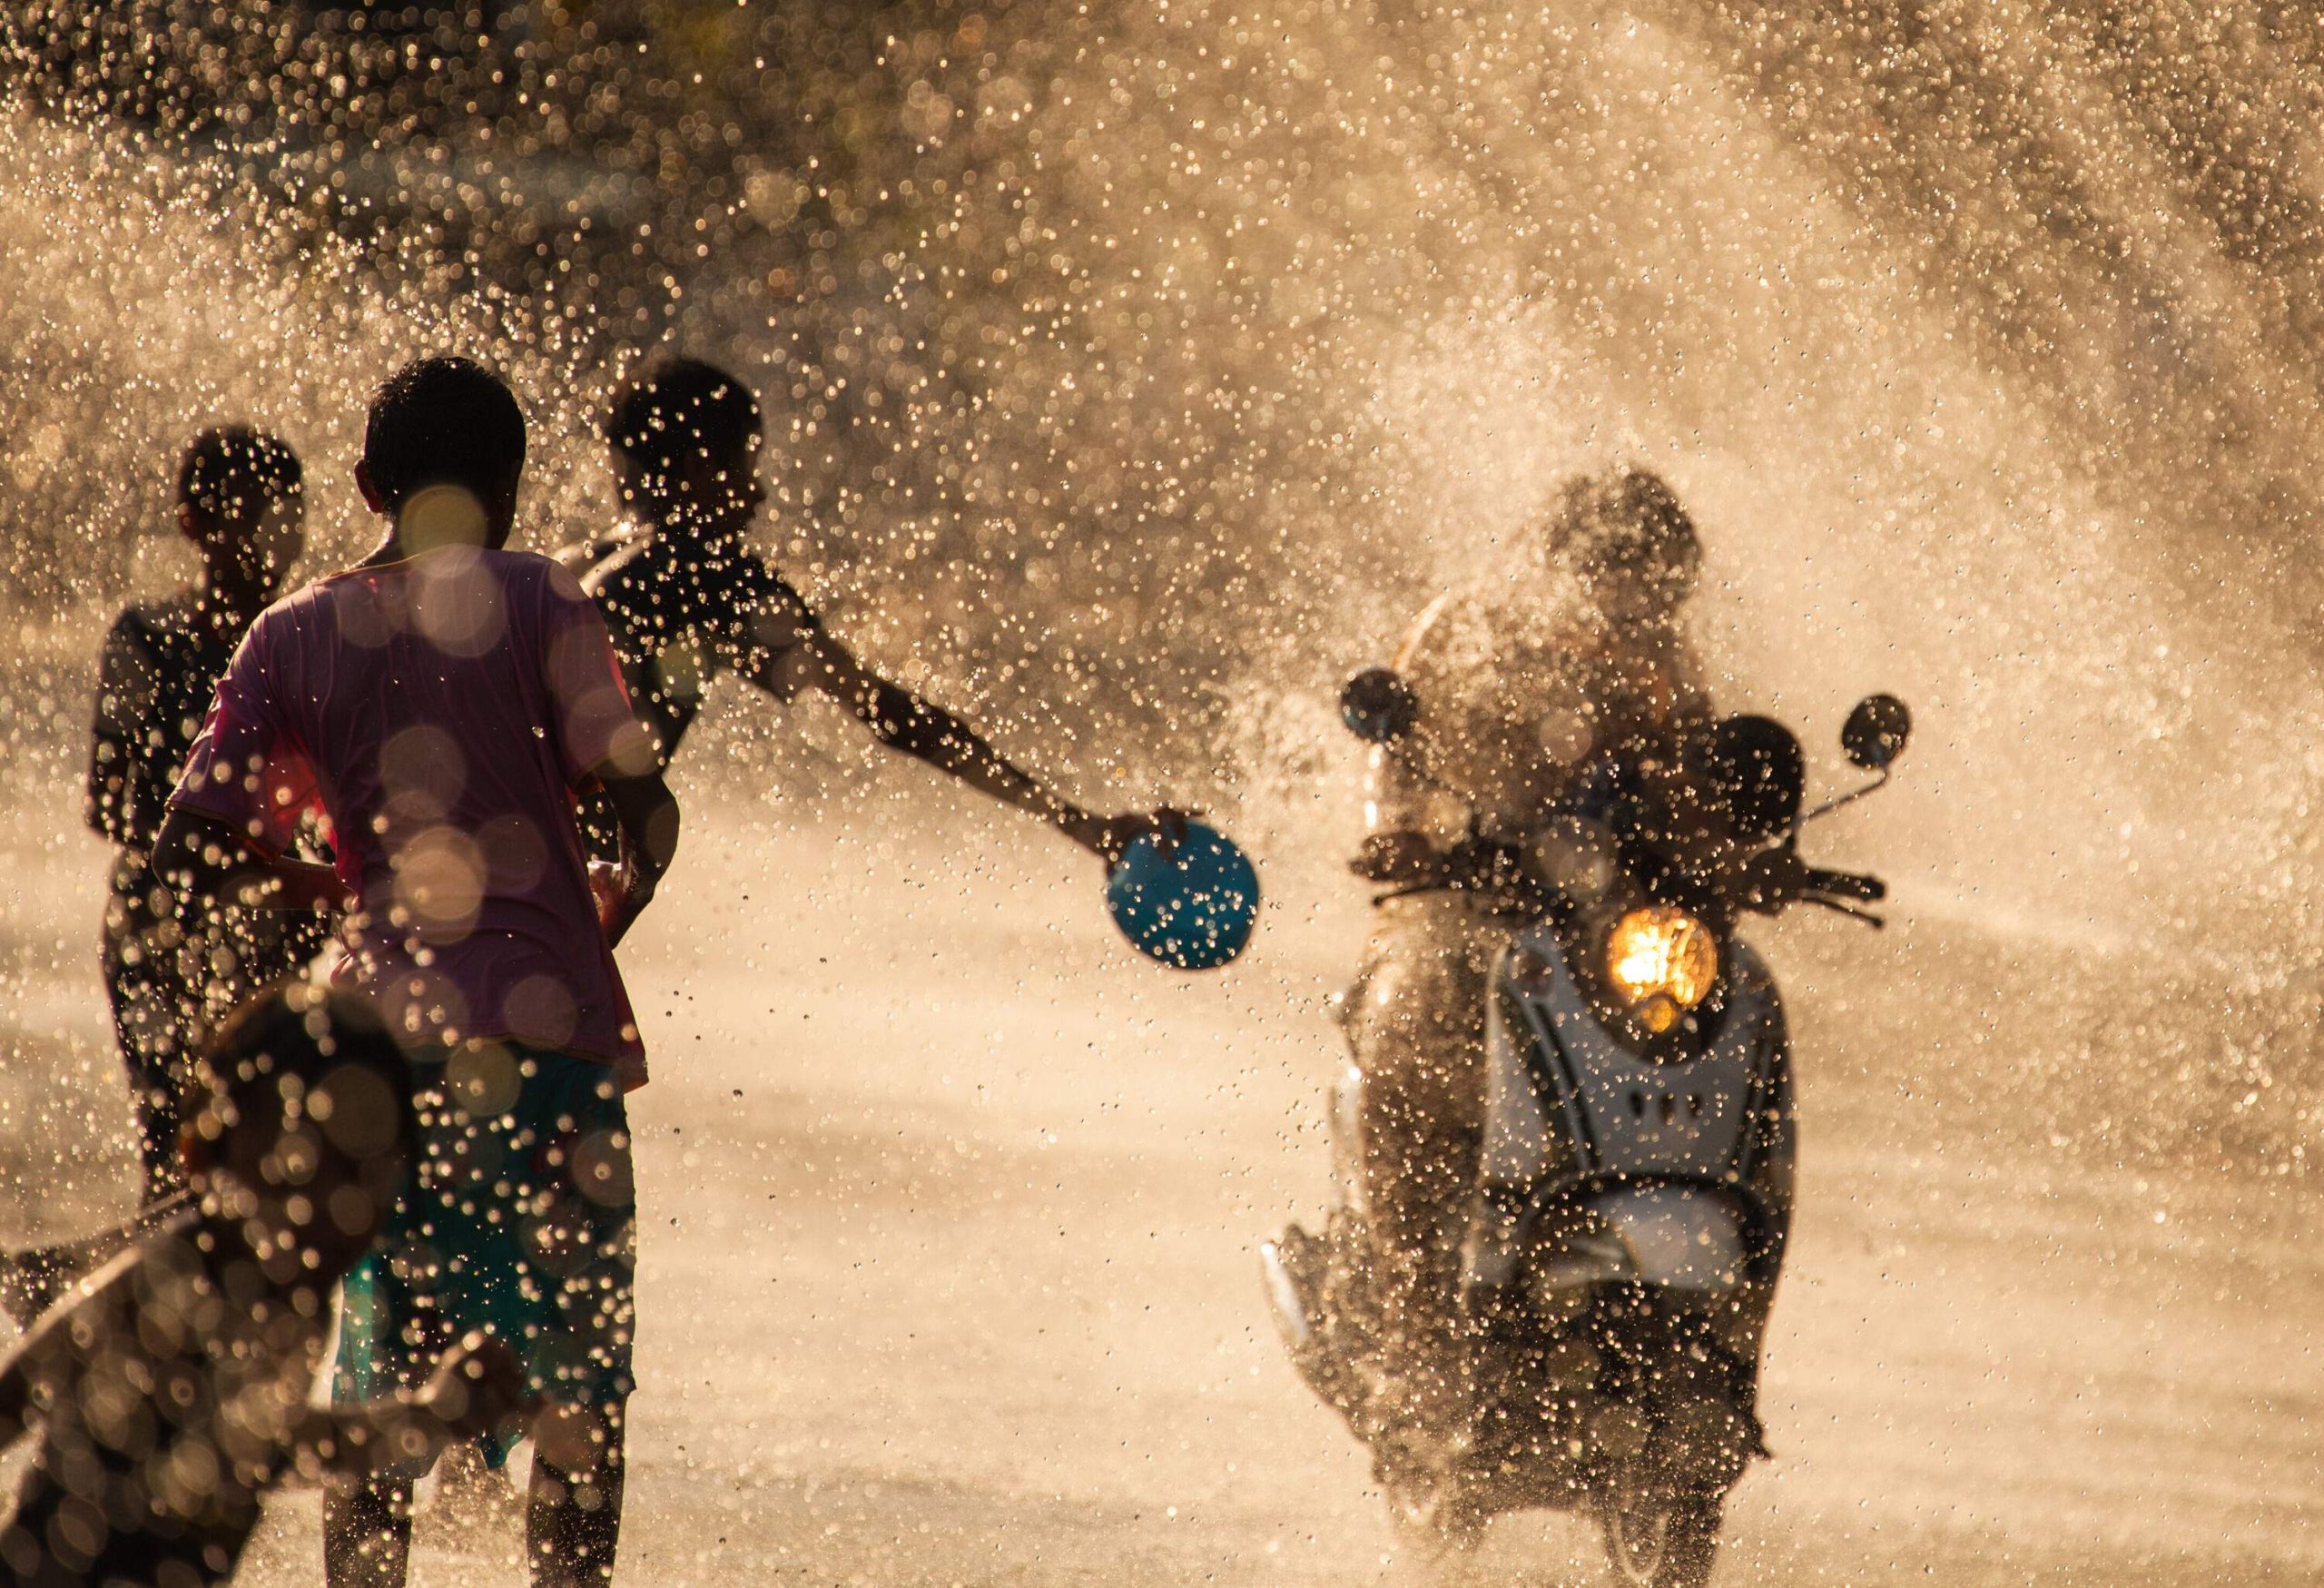 Kids splashing water to a passing motorcycle rider.